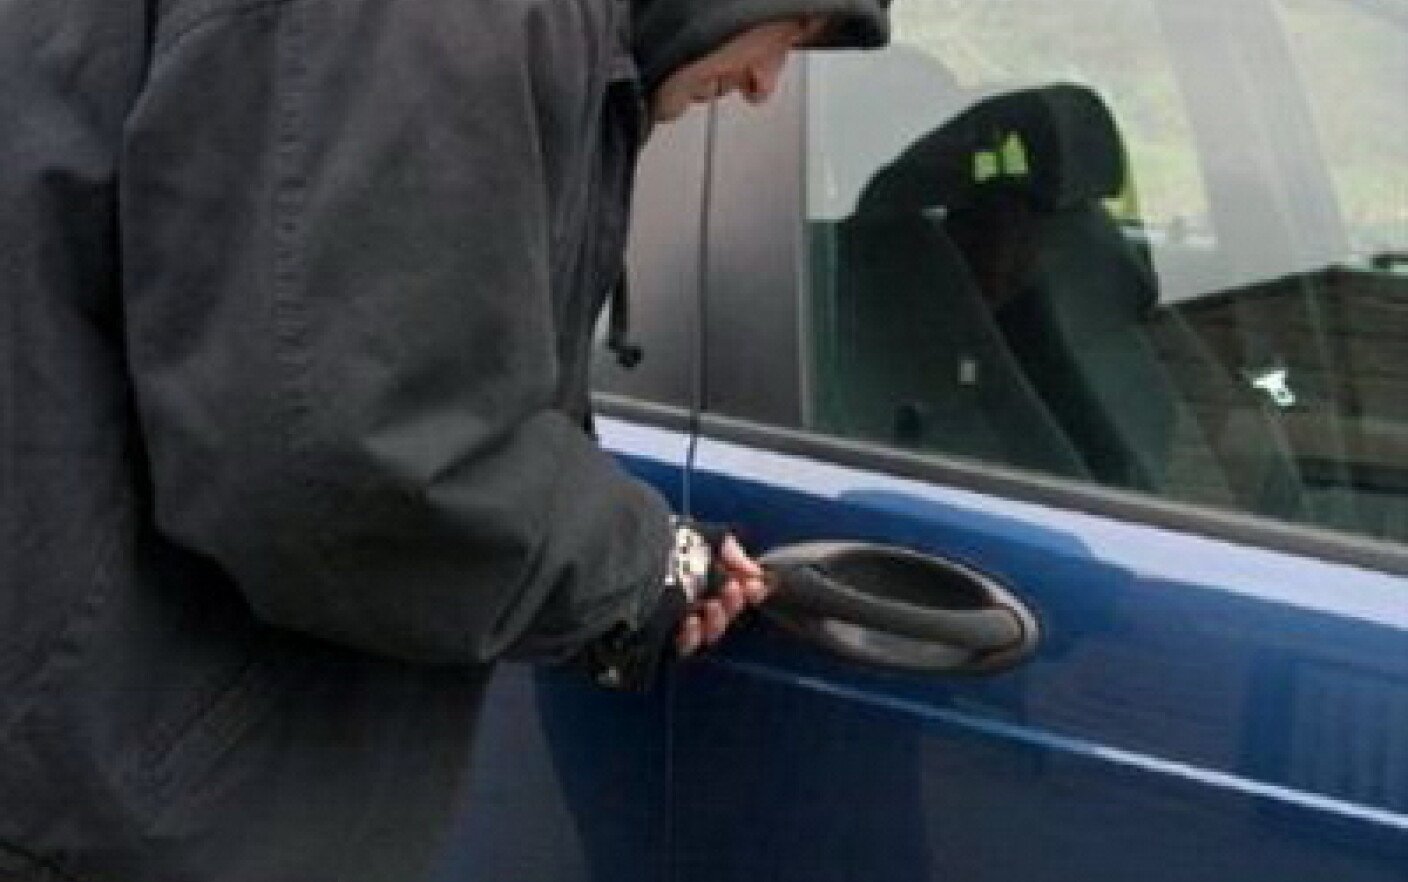  Arestat după ce a făcut o plimbare cu maşina unui locatar care o lăsase la stradă cu tot cu cheie